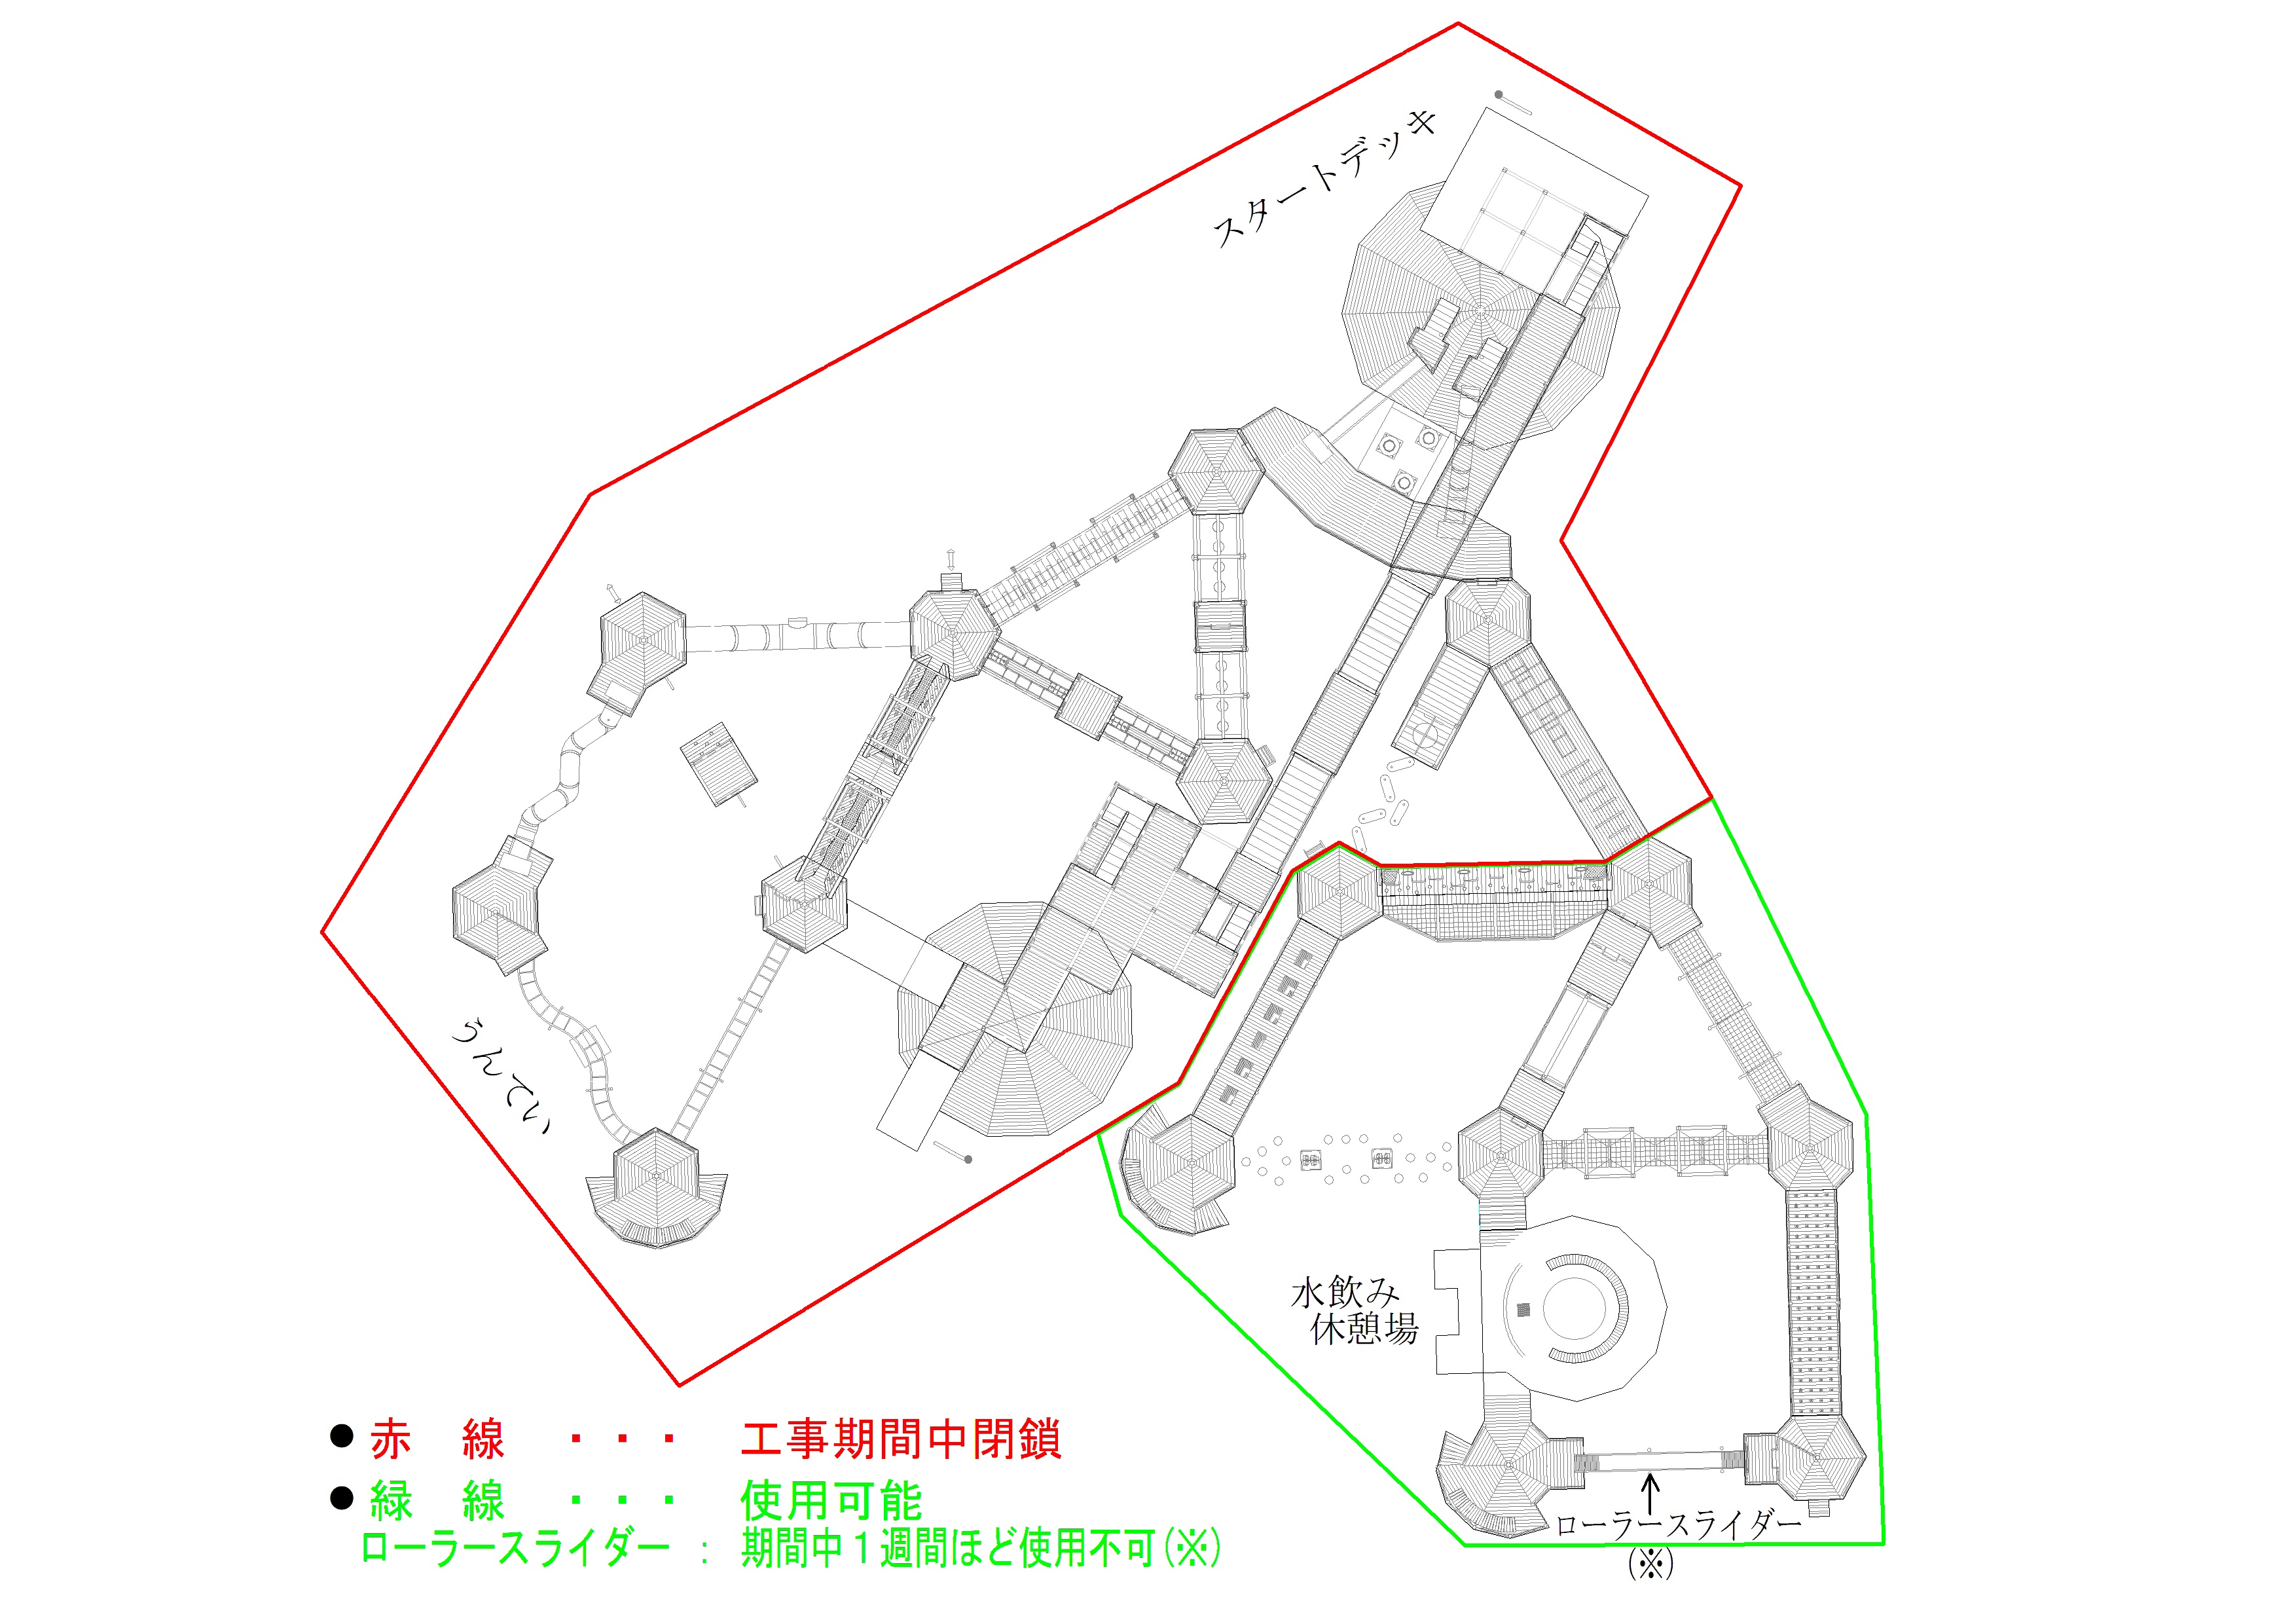 豊田スタジアム 芝生広場大型遊具修繕工事について Toyota Stadium 豊田スタジアム